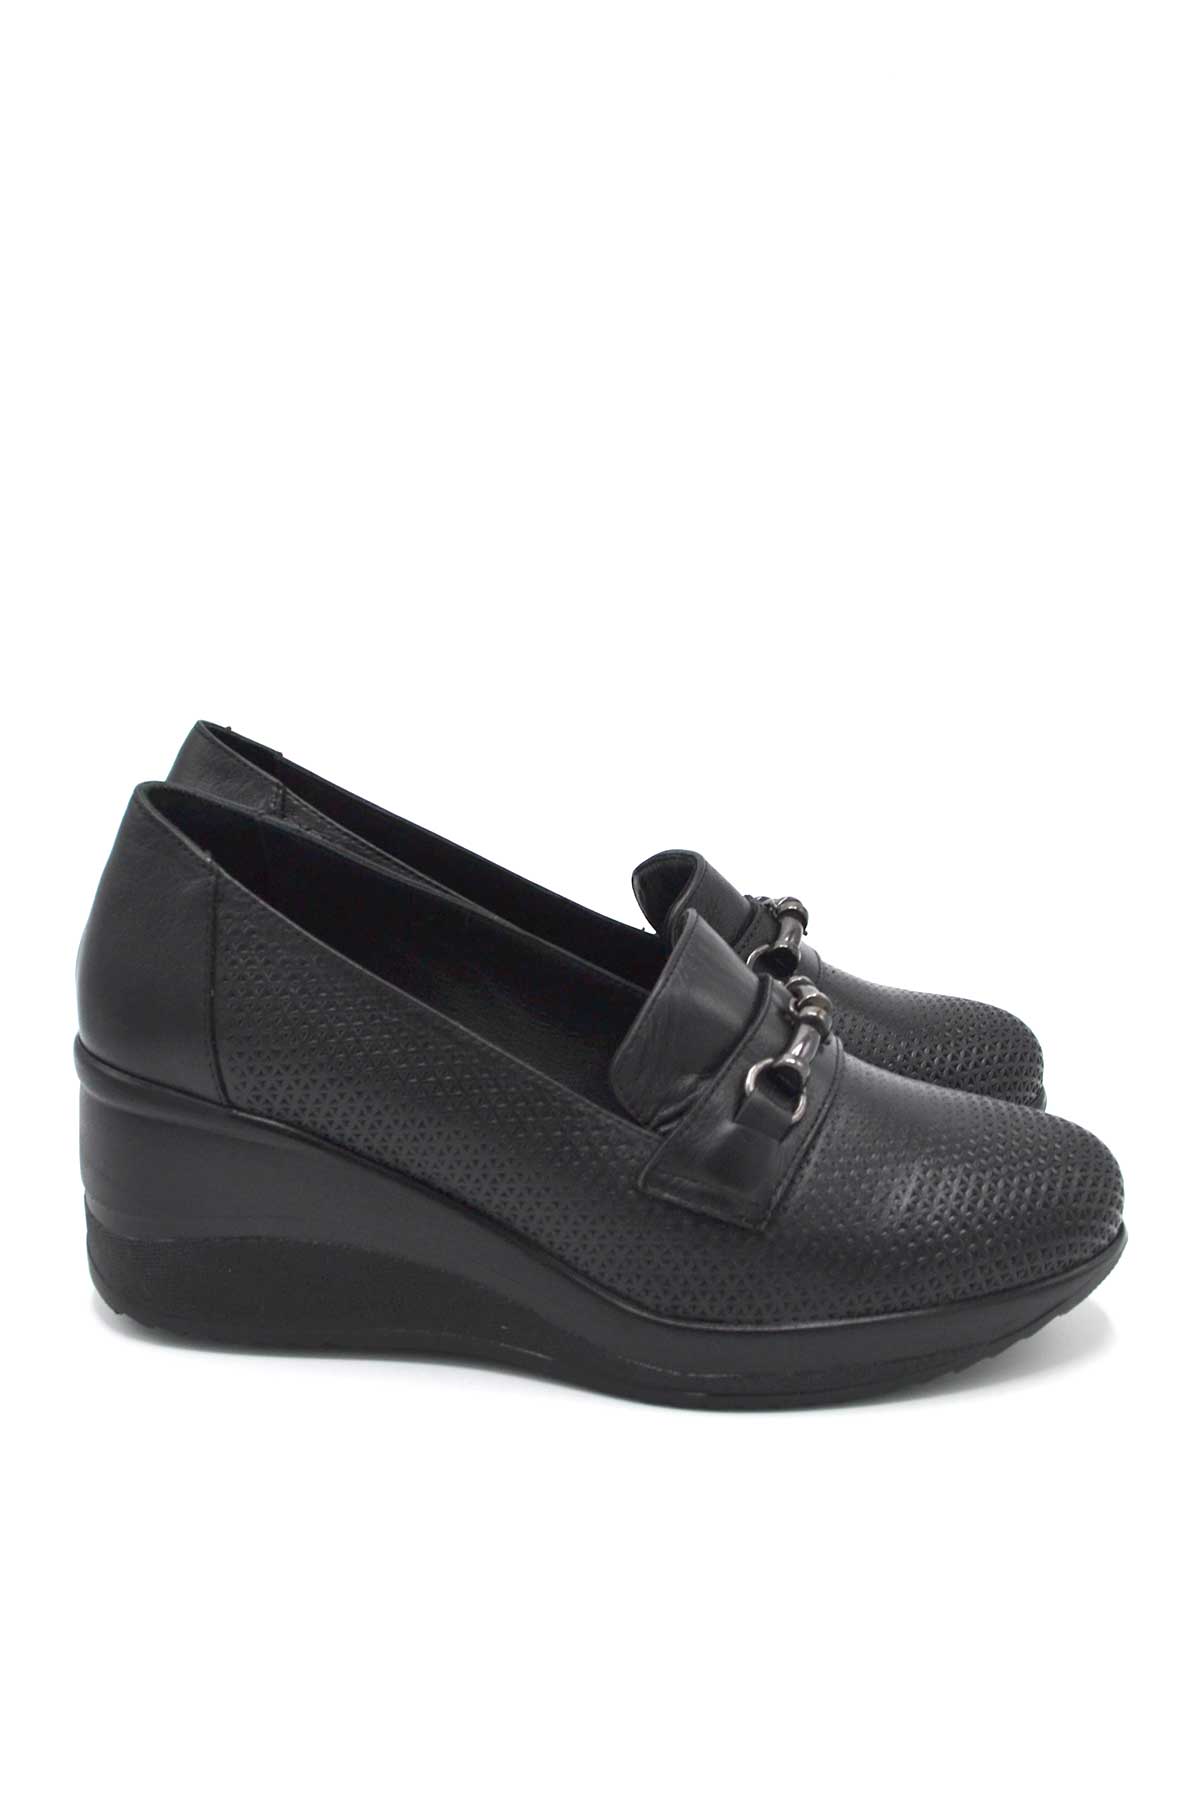 Kadın Dolgu Topuk Deri Ayakkabı Siyah 2111514Y